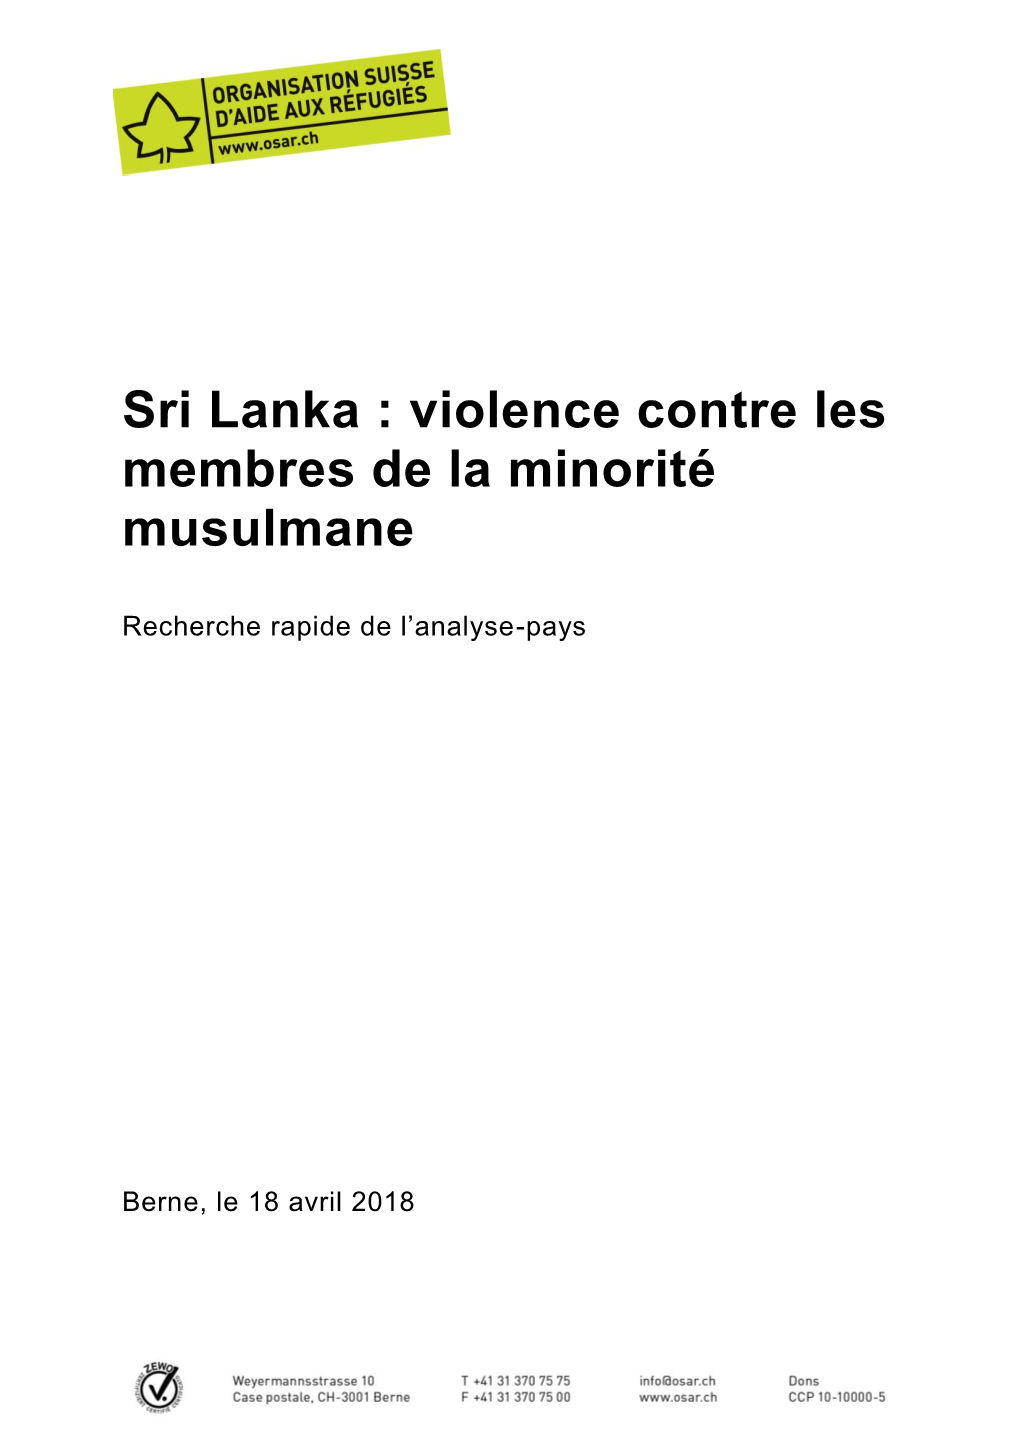 Sri Lanka : Violence Contre Les Membres De La Minorité Musulmane